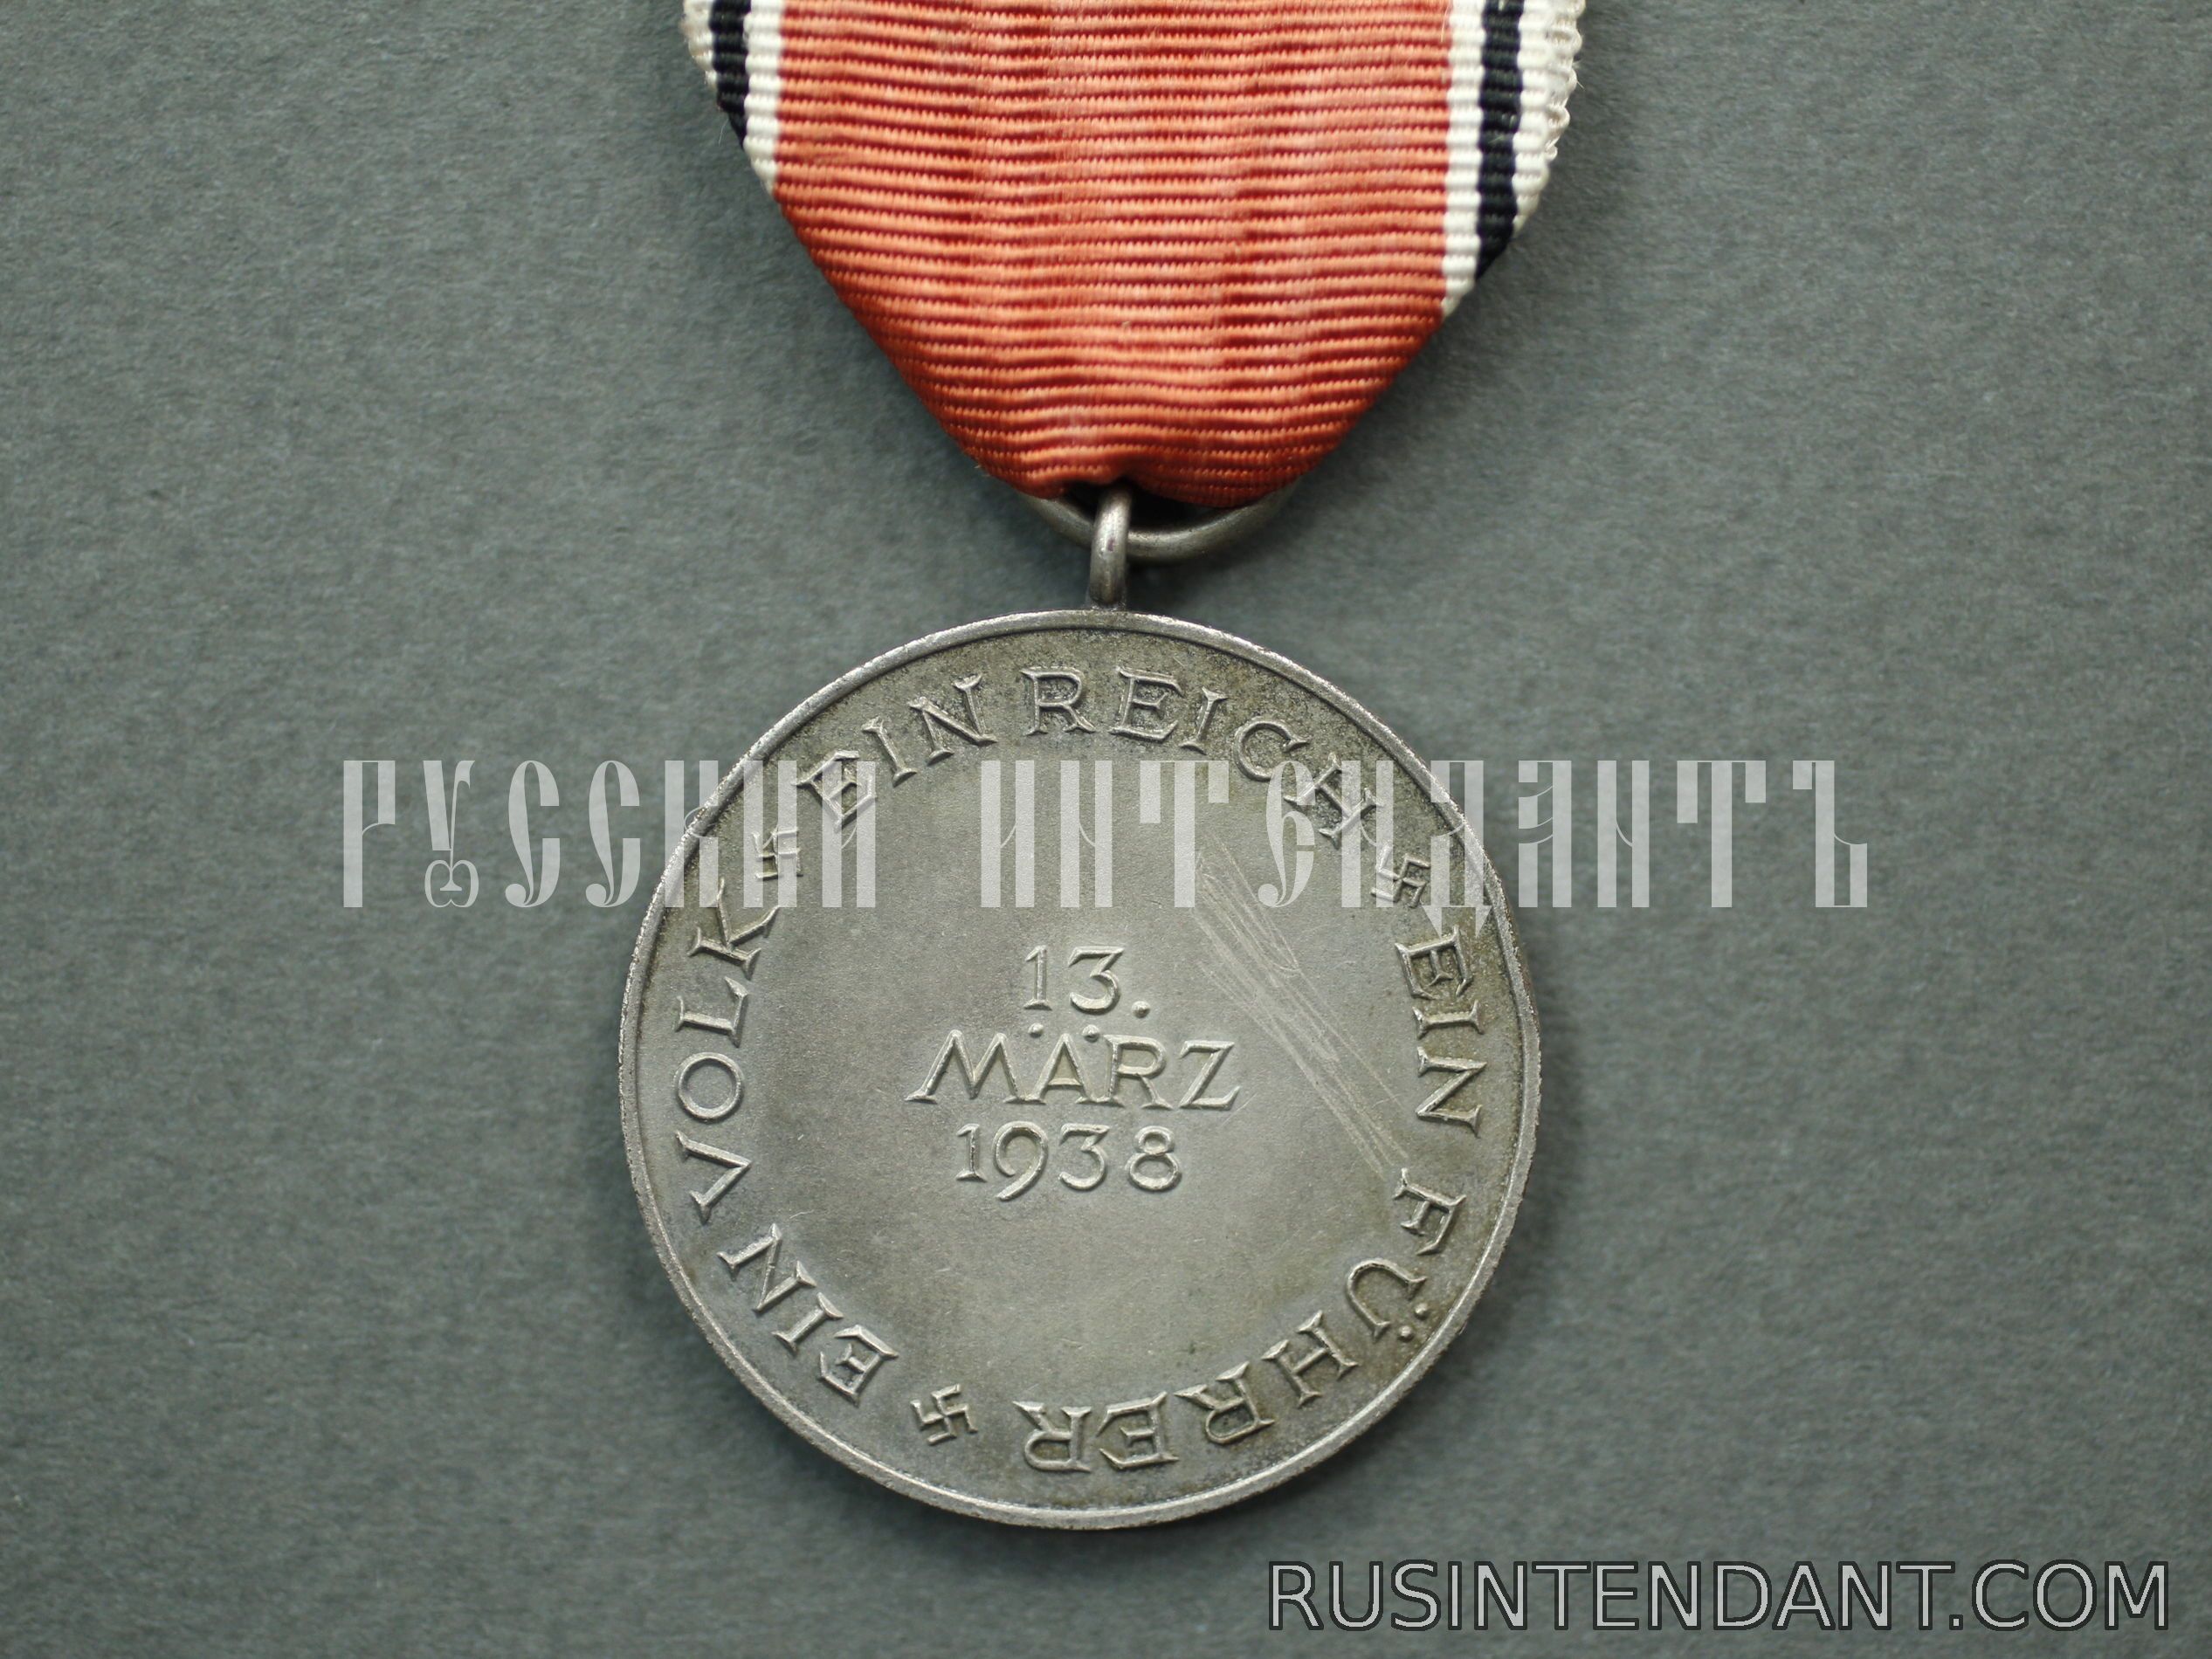 Фото 2: Медаль "В память 13 марта 1938 года" 